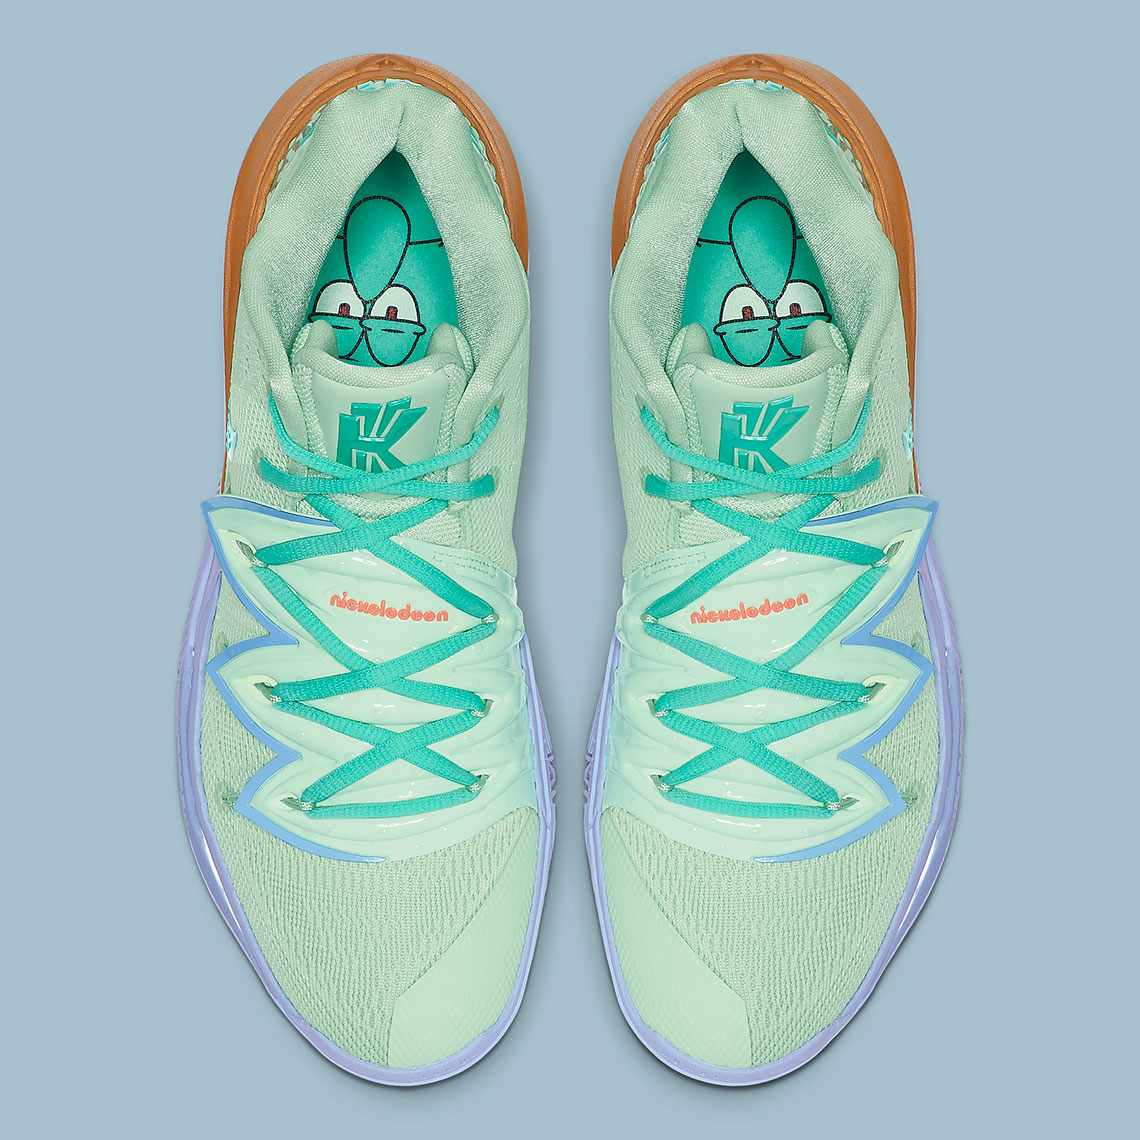 squidward shoes